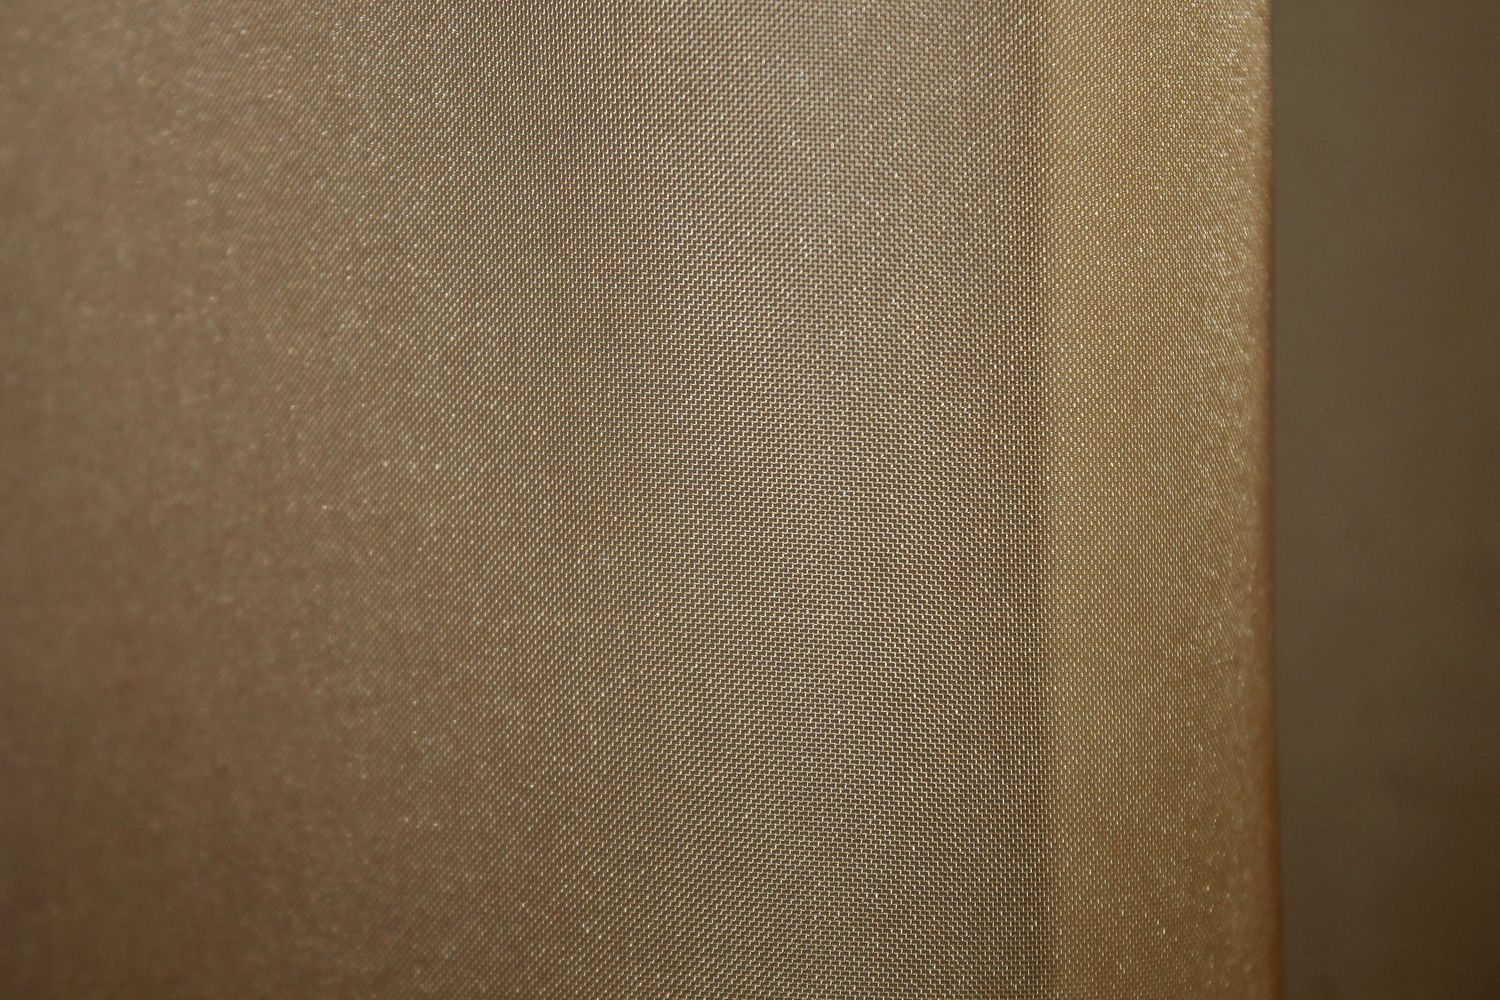 Тюль растяжка "Омбре" из шифона цвет светло-коричневый с белым 1390т, Тюль на метраж, Нужную Вам ширину указывайте при покупке. (Ширина набирается по длине рулона.), 2,8 м.